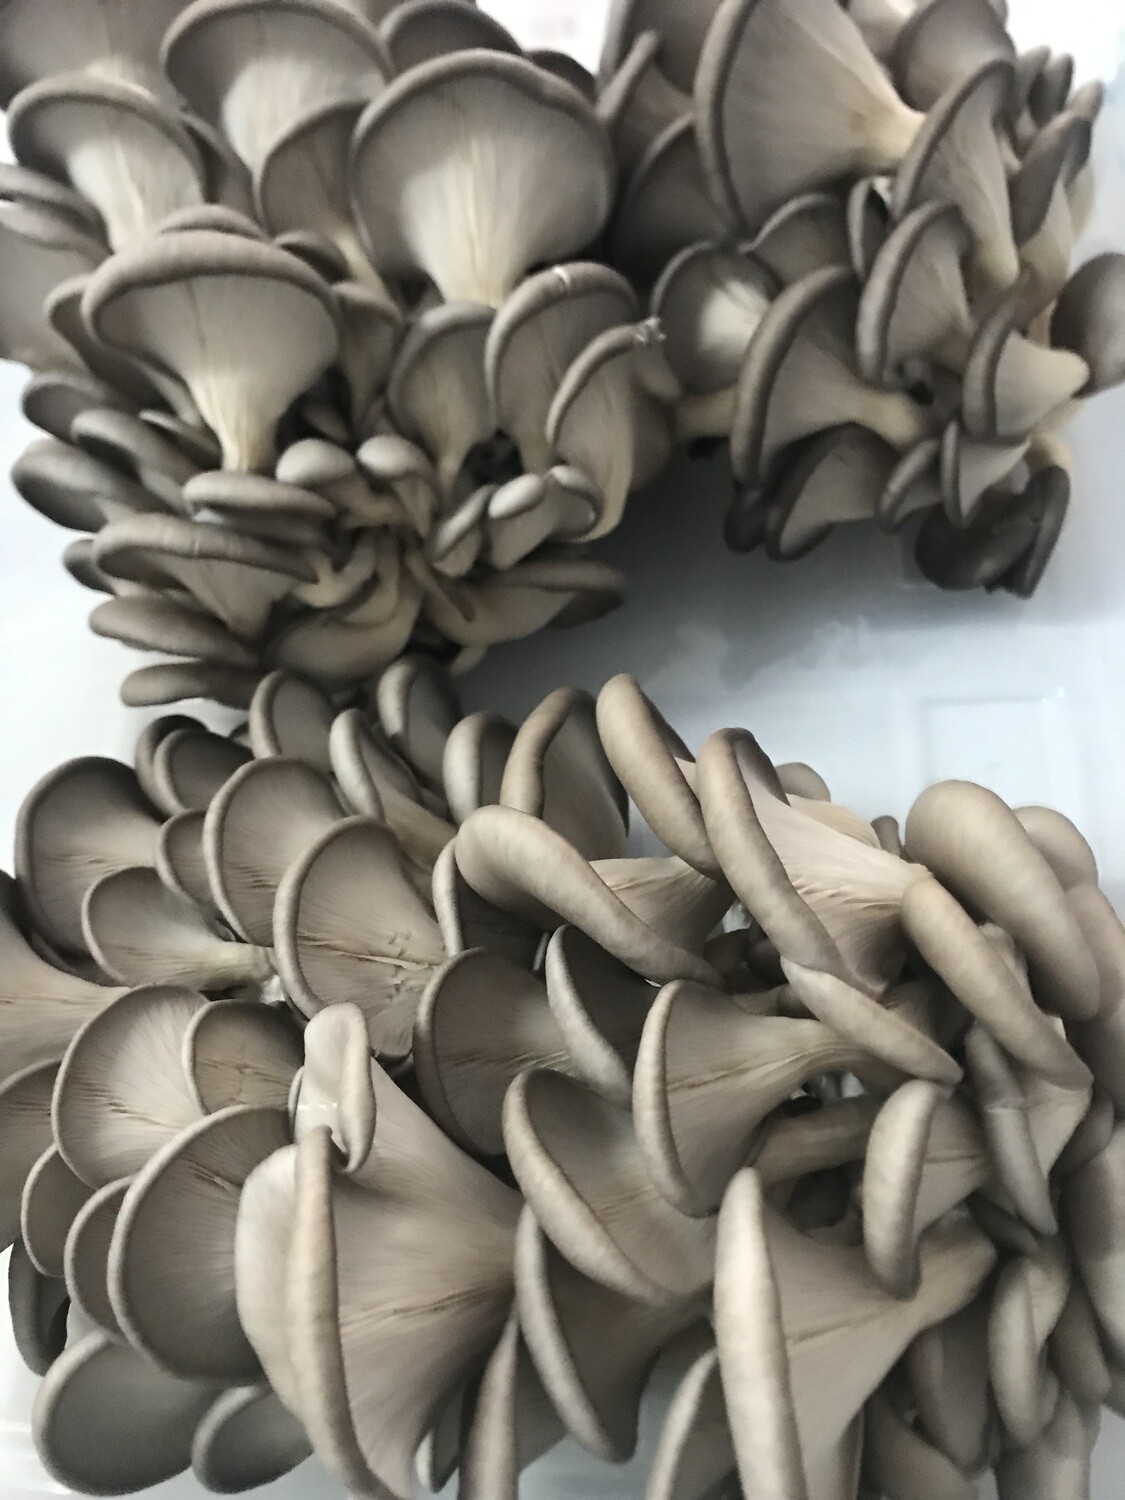 Grey/Blue Oyster Mushrooms ~5 lb (fresh)